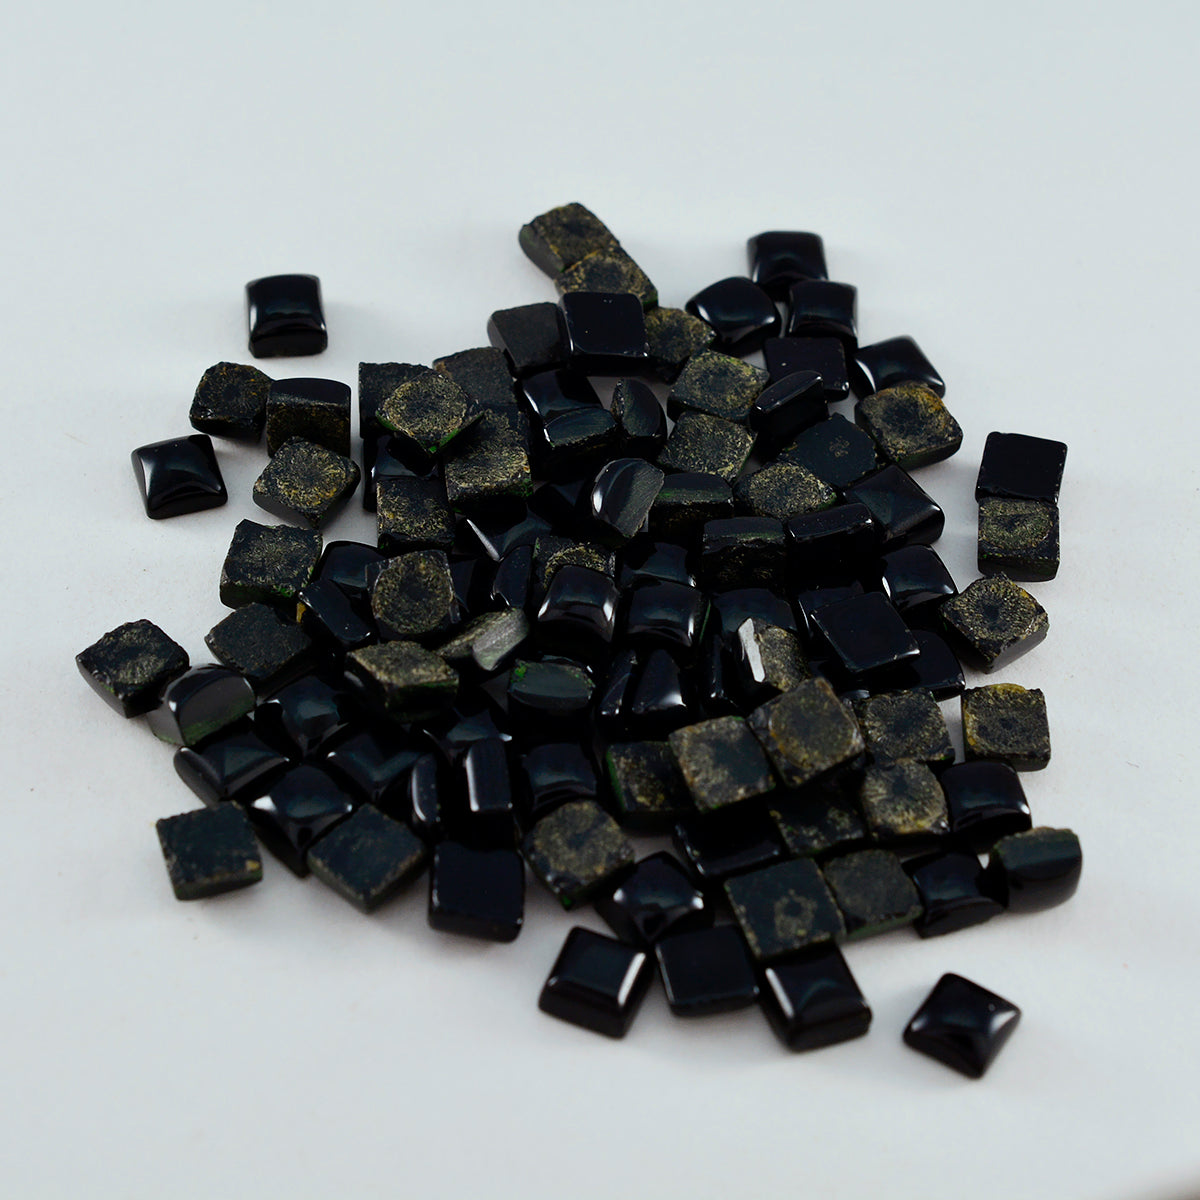 Riyogems 1 Stück schwarzer Onyx-Cabochon, 5 x 5 mm, quadratische Form, Stein von erstaunlicher Qualität